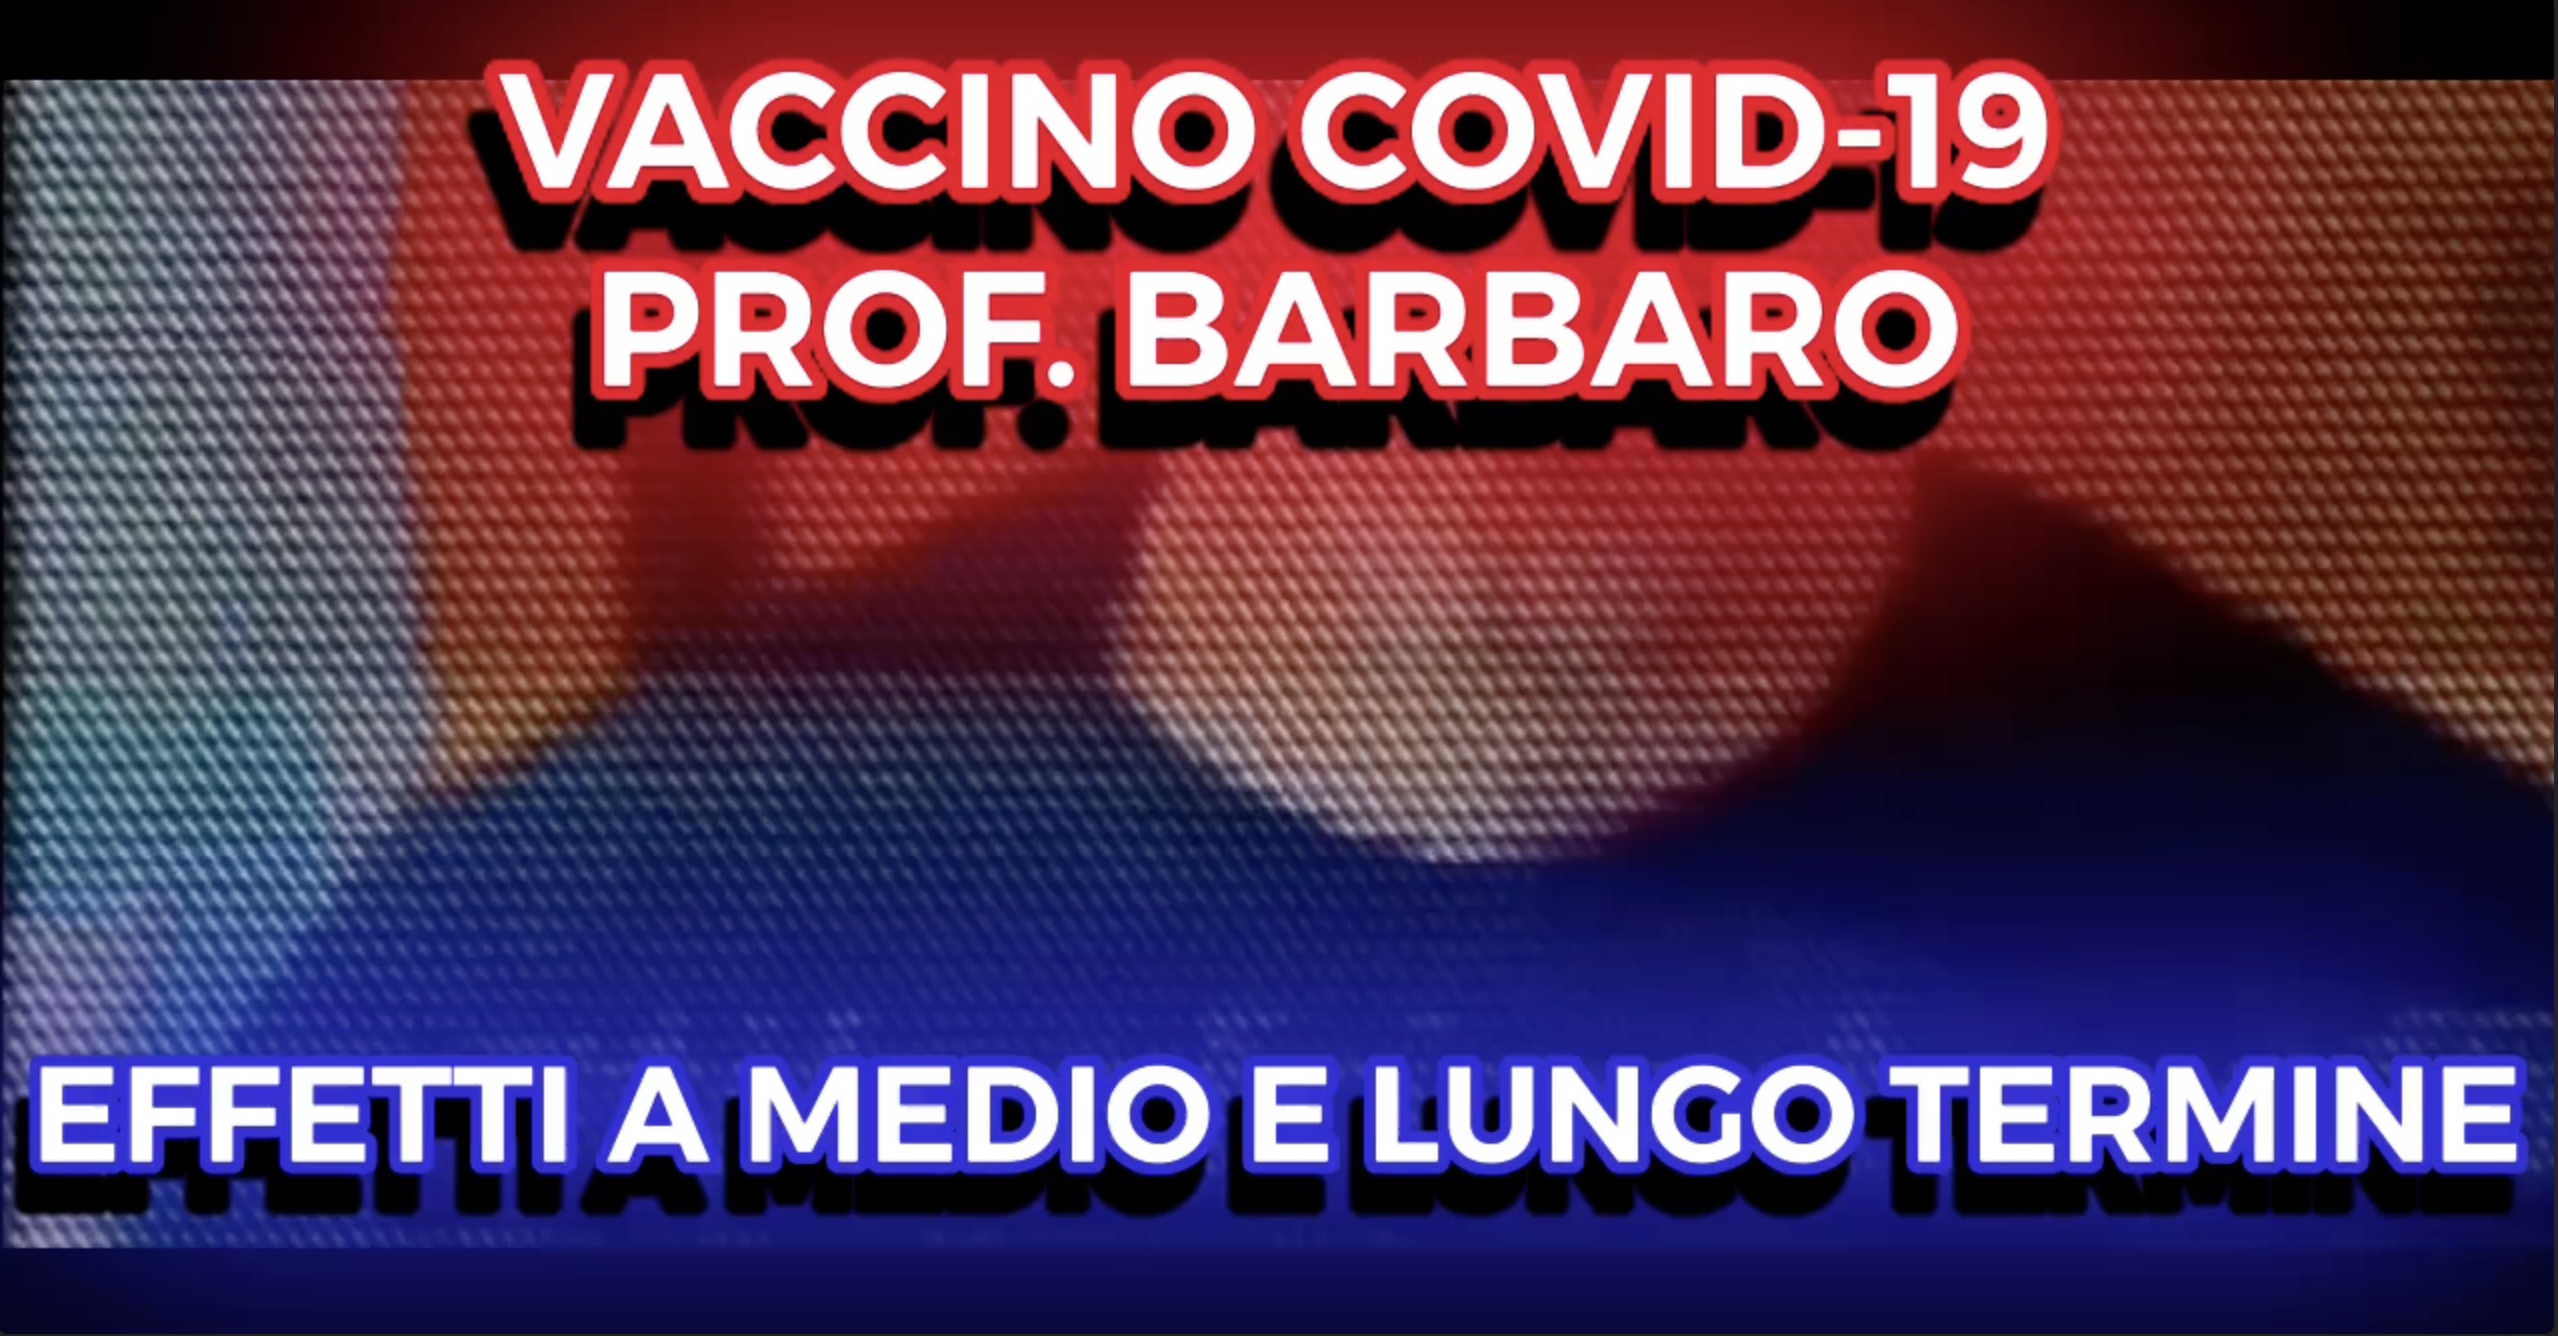 Vaccino Covid-19 - Prof. Barbero - Effetti a Medio e Lungo Termine